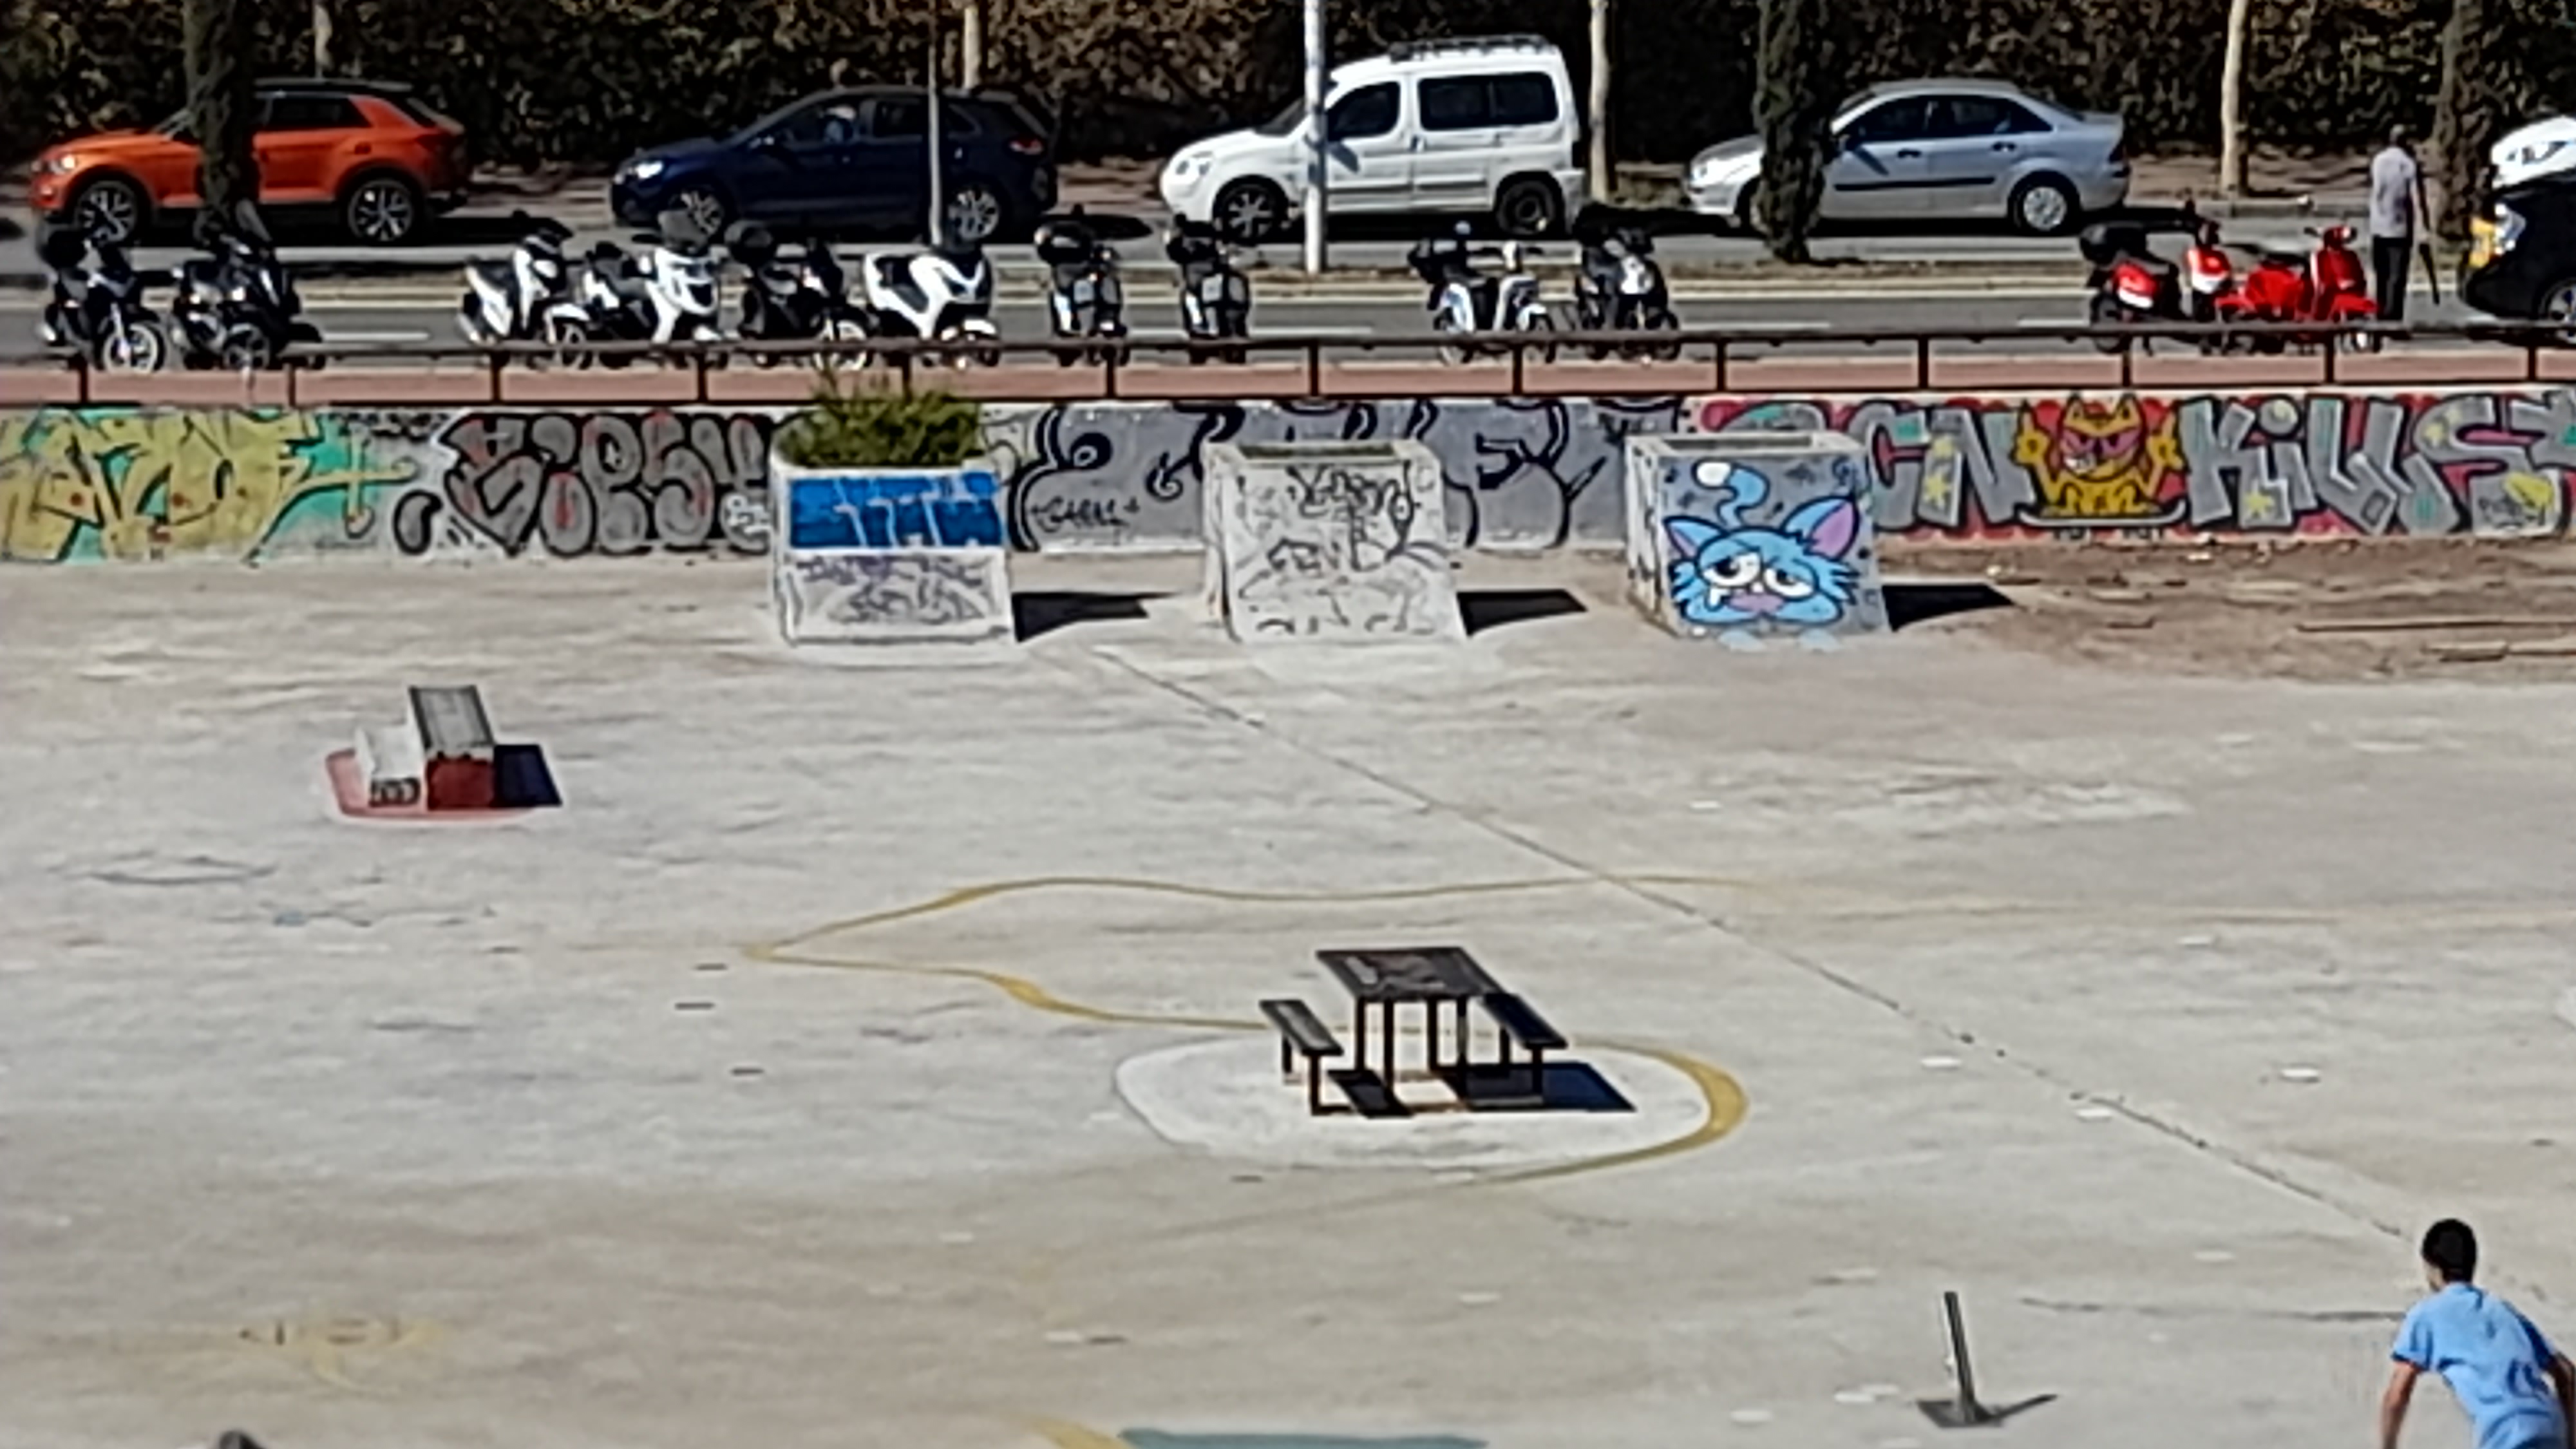 Picnic DIY skatepark